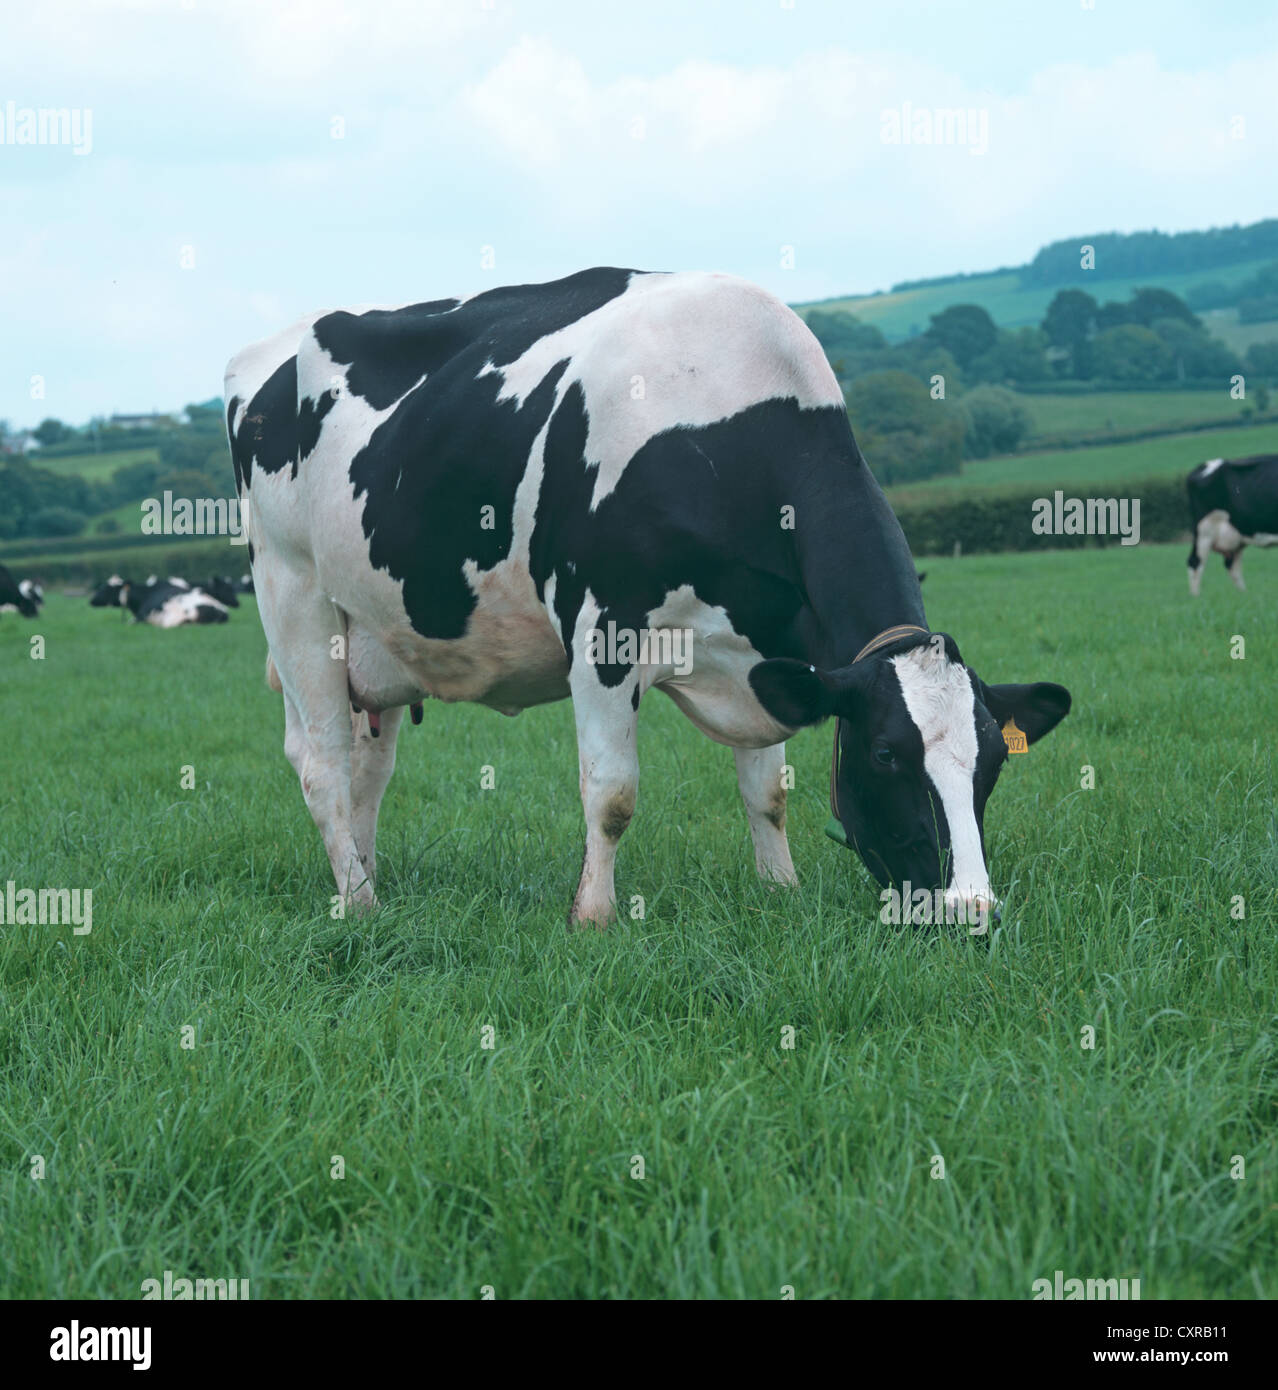 Holstein Friesian dairy cow in milk on grass pasture, Devon Stock Photo